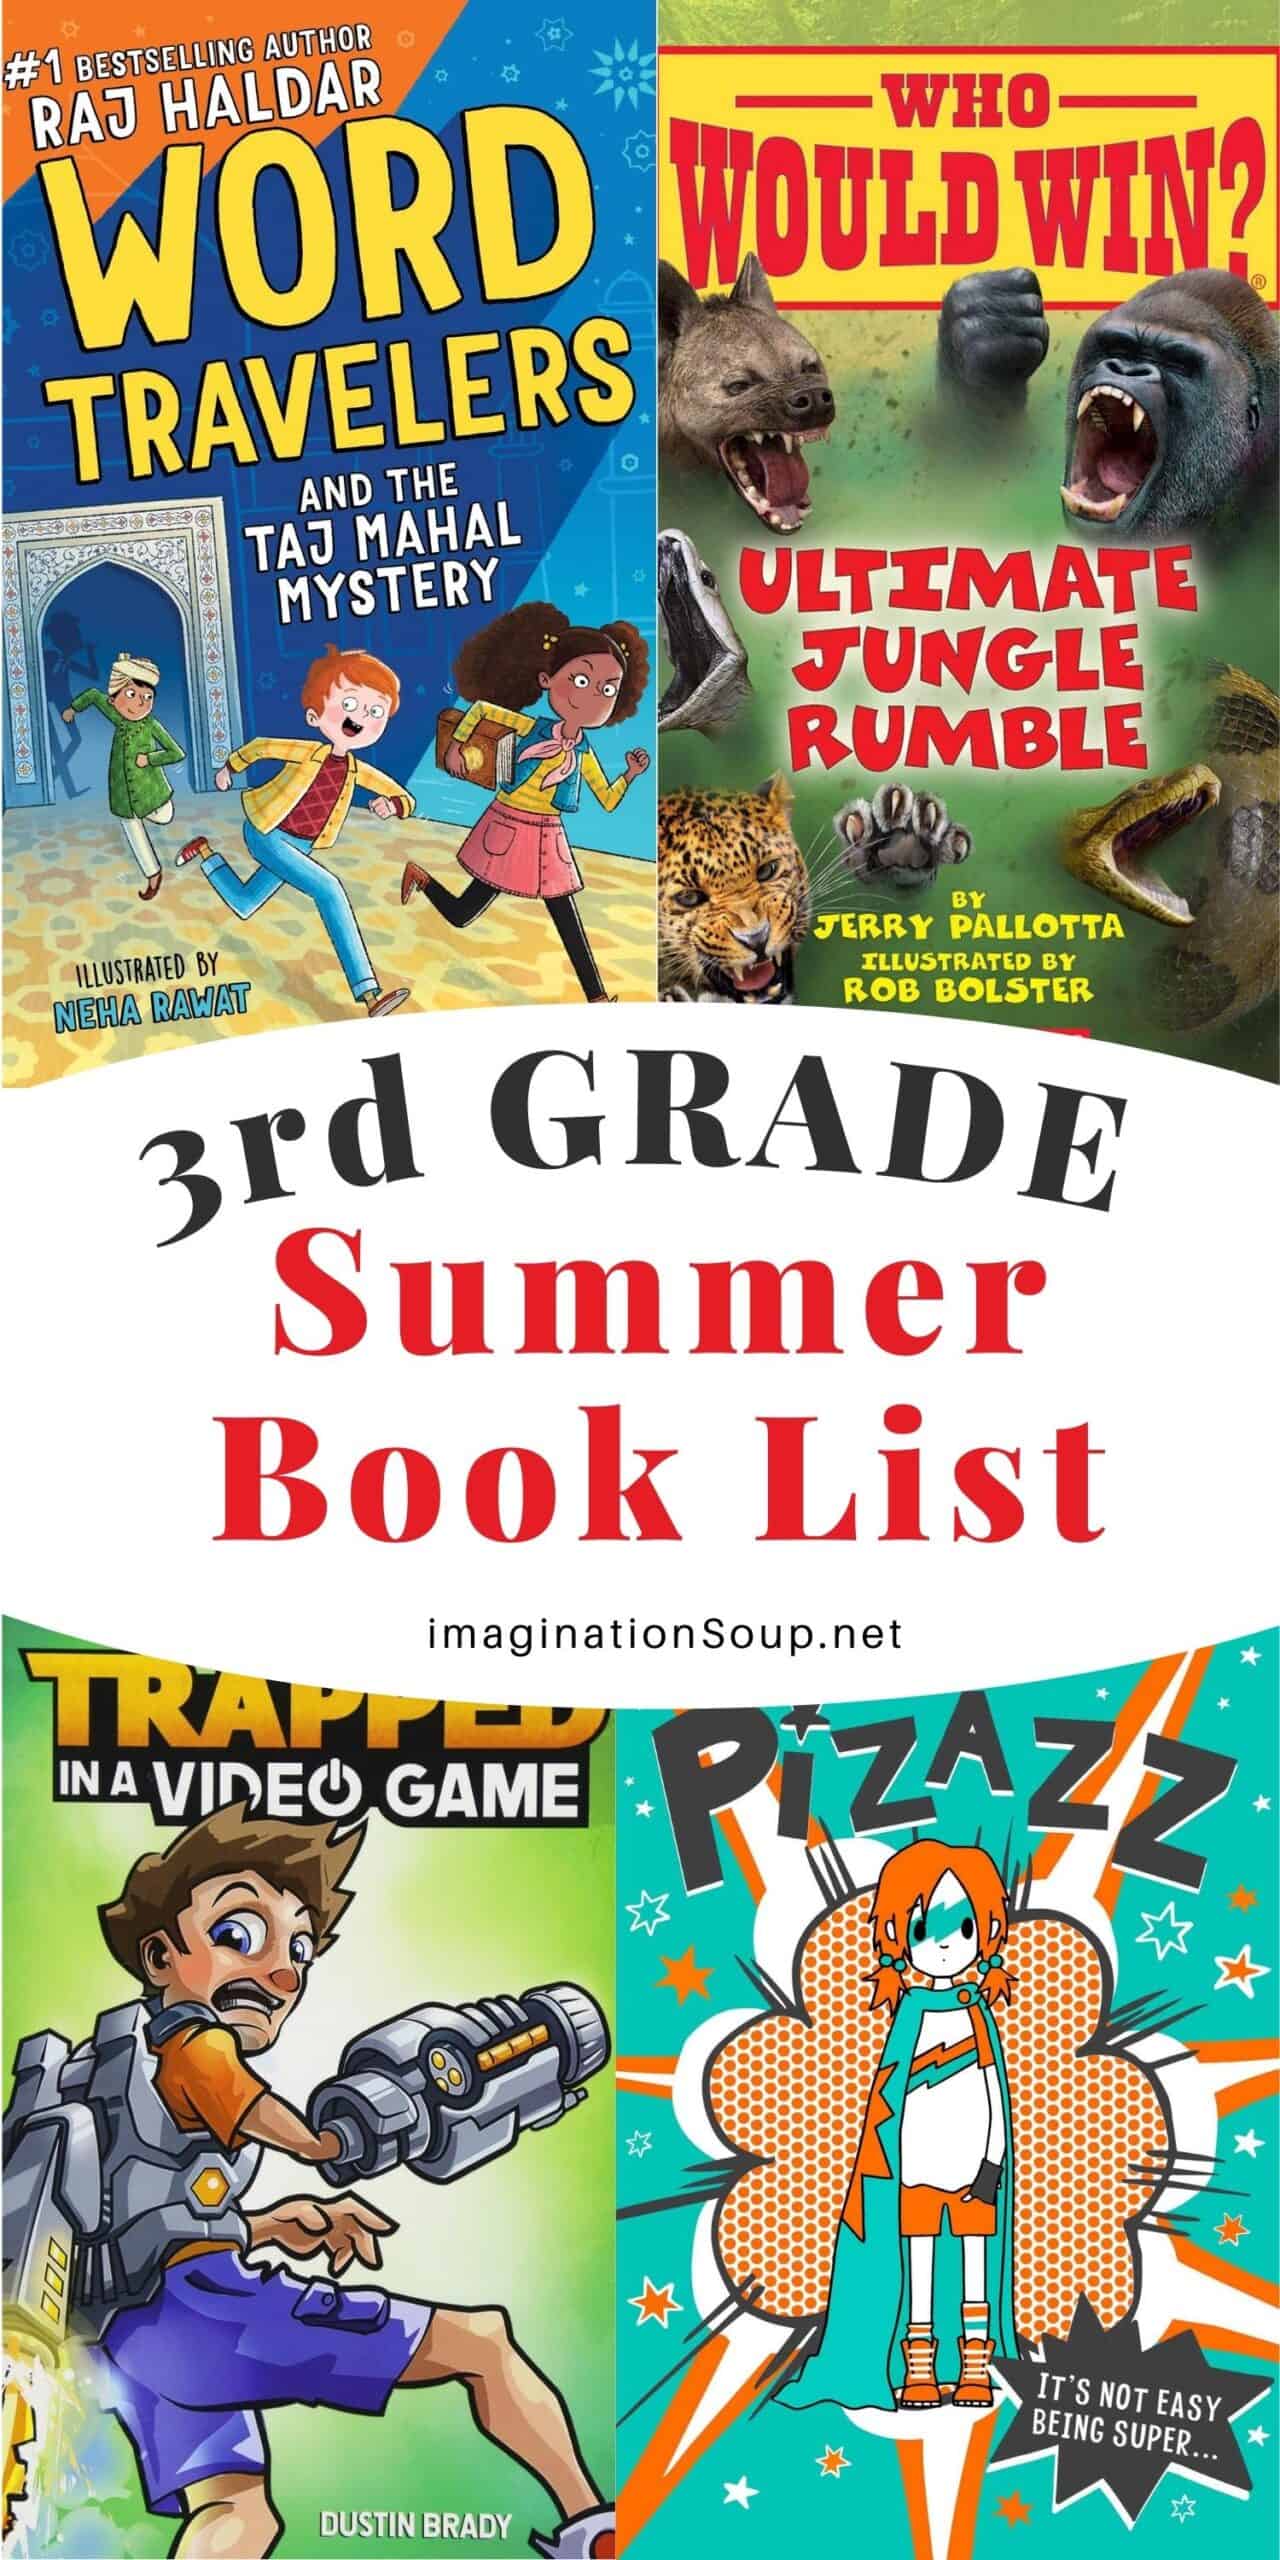 3rd grade summer book list